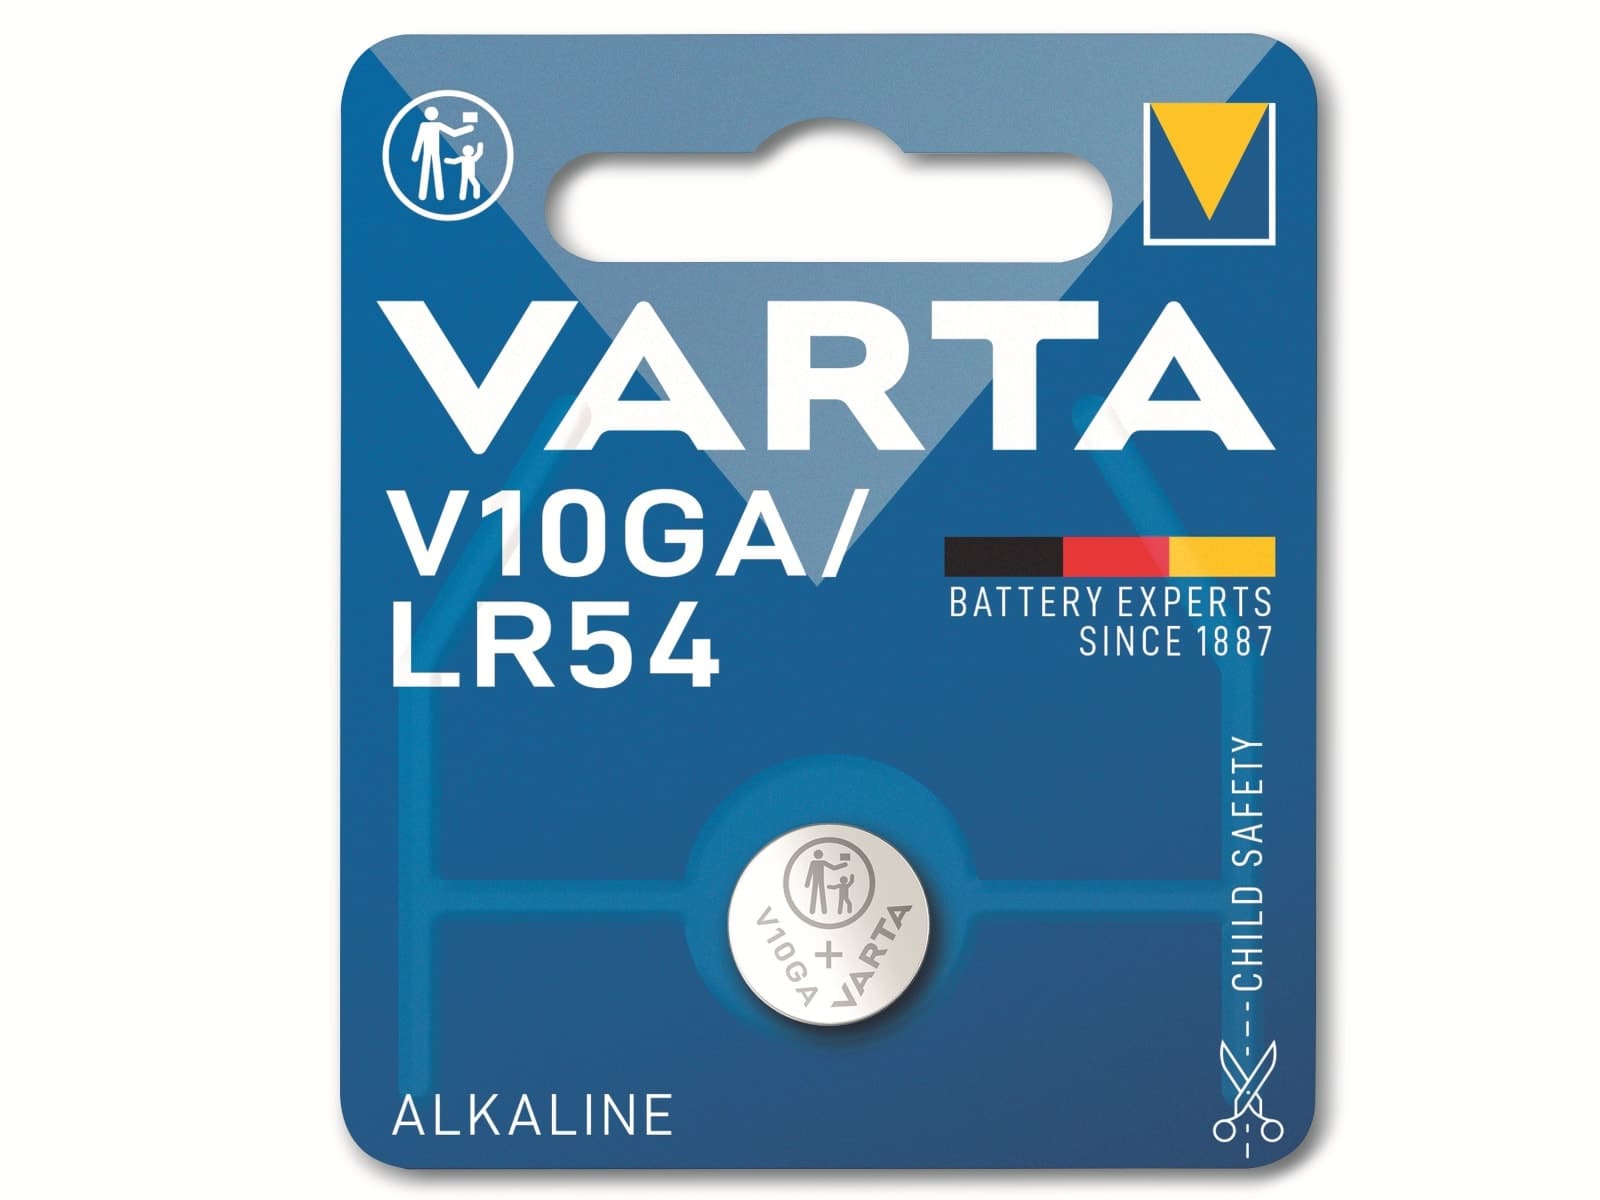 VARTA Knopfzelle Alkaline, LR54,  1.5V V10GA,  1.5V, 1 Stück